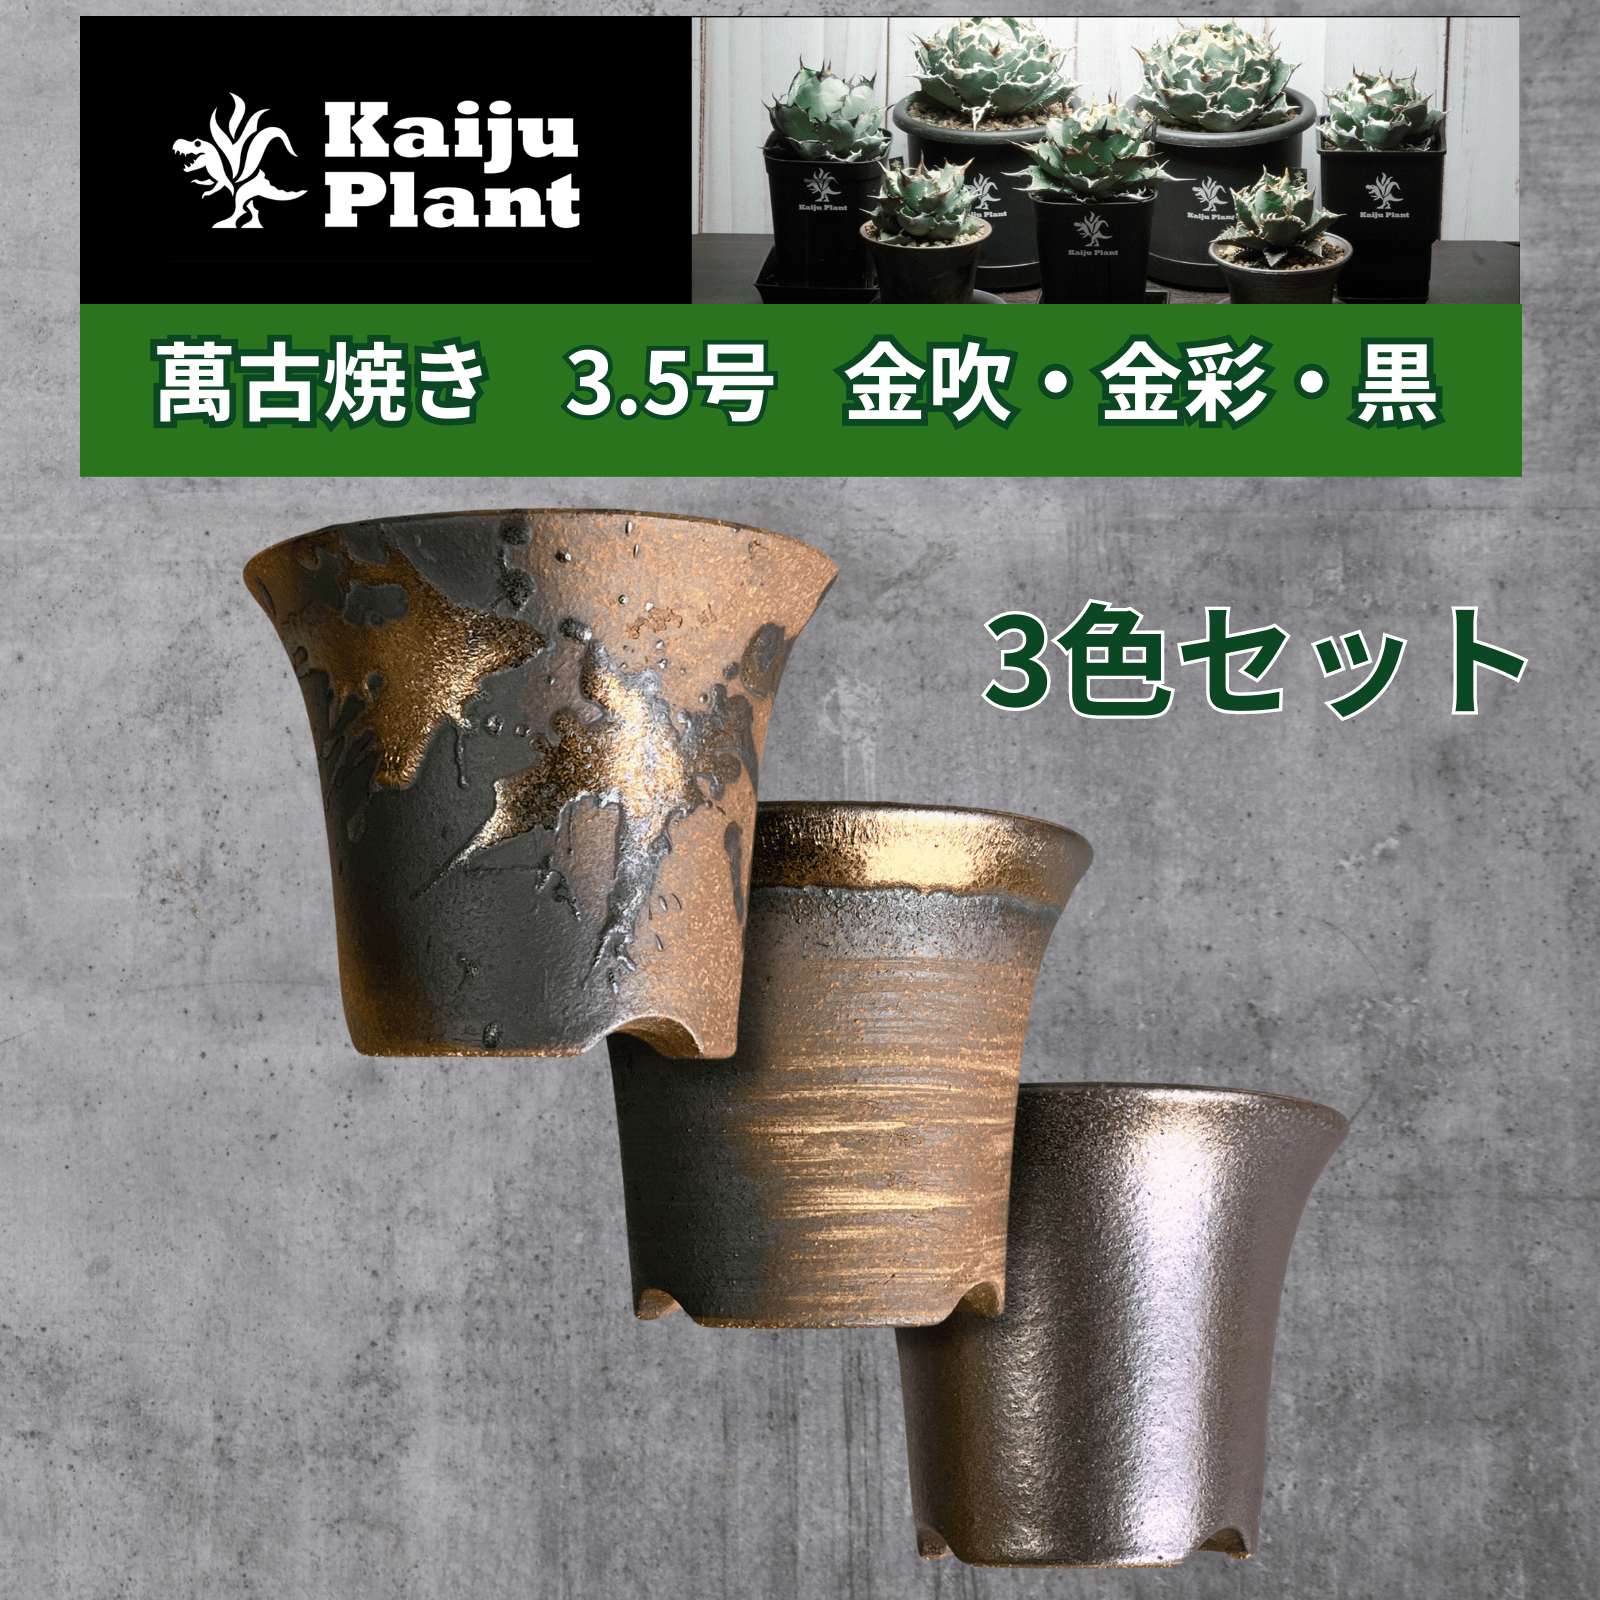 Kaiju Plant Banko .3.5 номер керамика горшок труба агава много мясо . корень для золотой дуть золотая краска чёрный 3 цвет 3 горшок комплект 